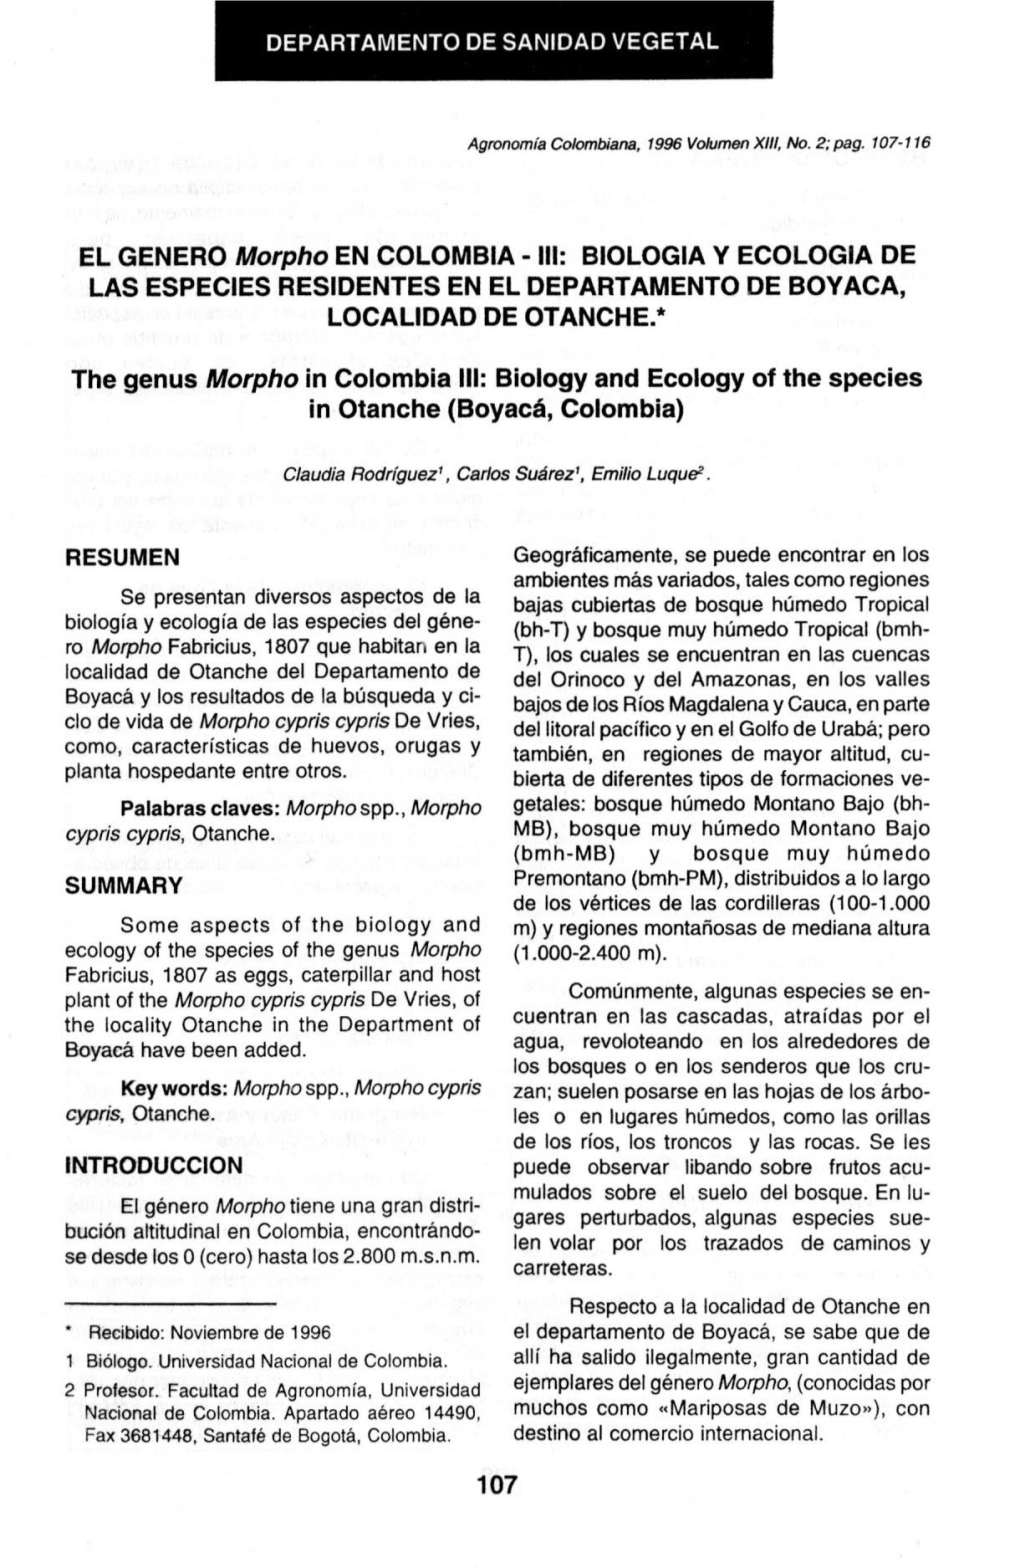 EL GENERO Morpho EN COLOMBIA - III: BIOLOGIA V ECOLOGIA DE LAS ESPECIES RESIDENTES EN EL DEPARTAMENTO DE BOYACA, LOCALIDAD DE OTANCHE.*